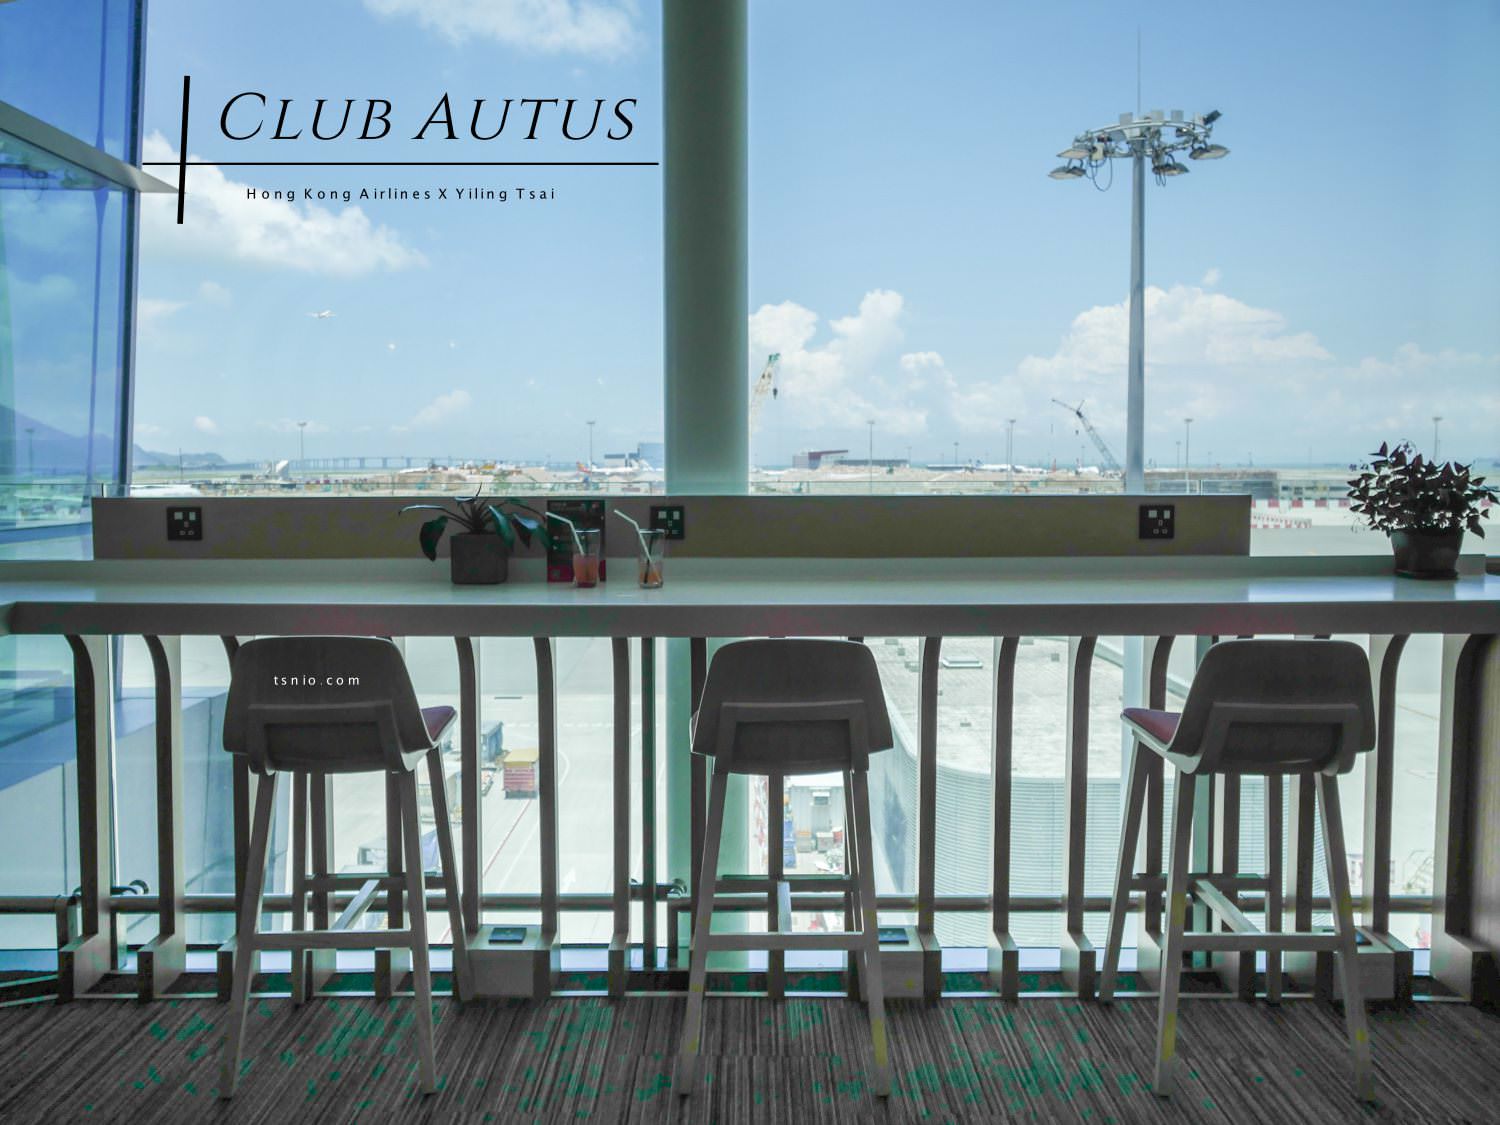 香港航空貴賓室 Club Autus 遨堂貴賓室 現做港式風味餐點雞蛋仔